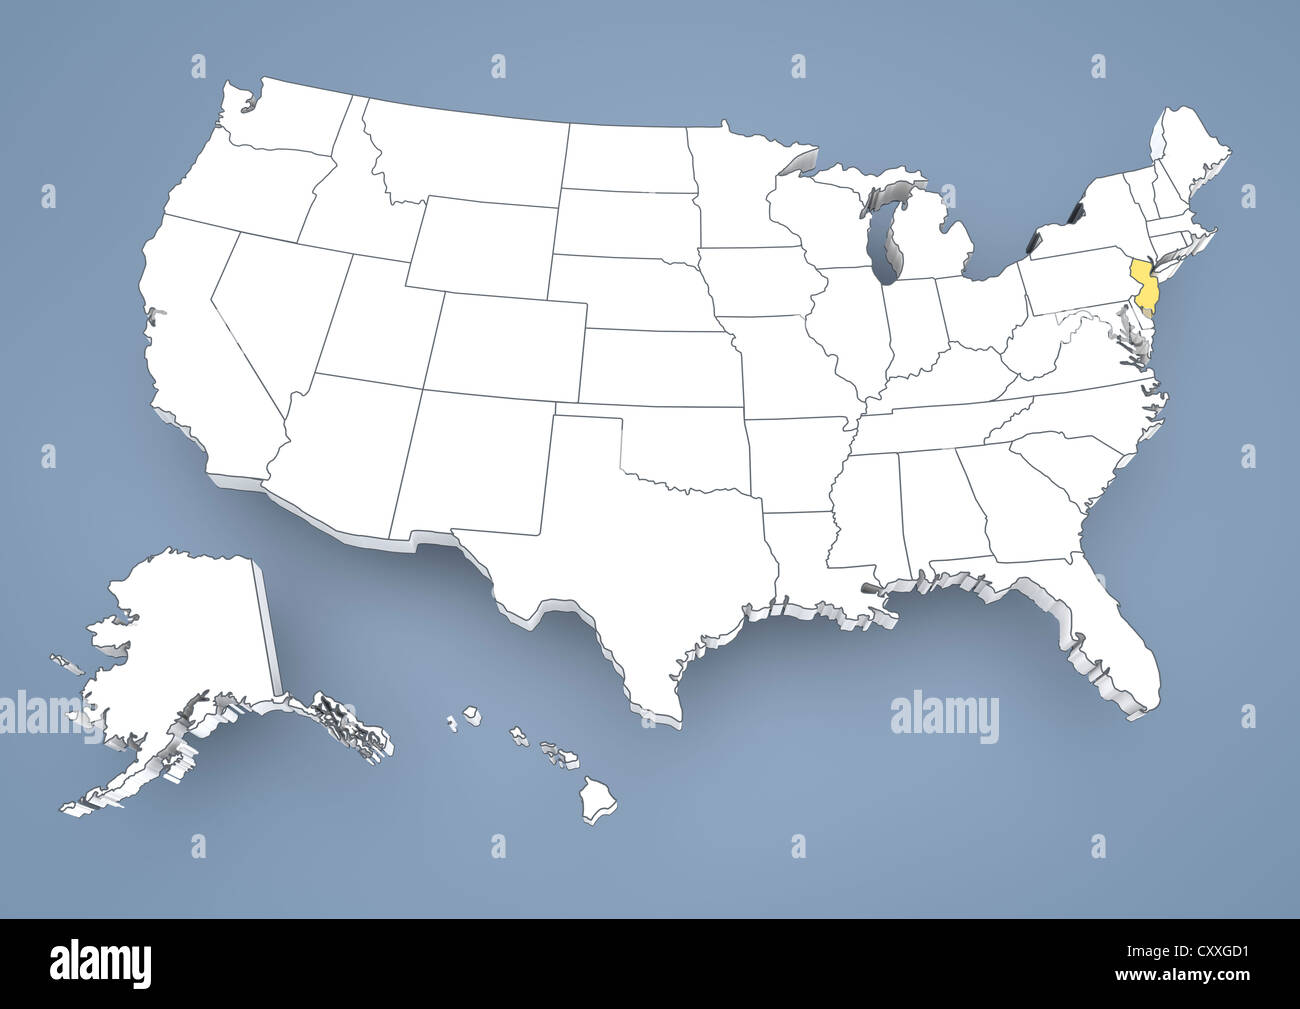 New Jersey, NJ, mis en évidence sur une carte en courbes de USA, United States of America, 3D illustration Banque D'Images